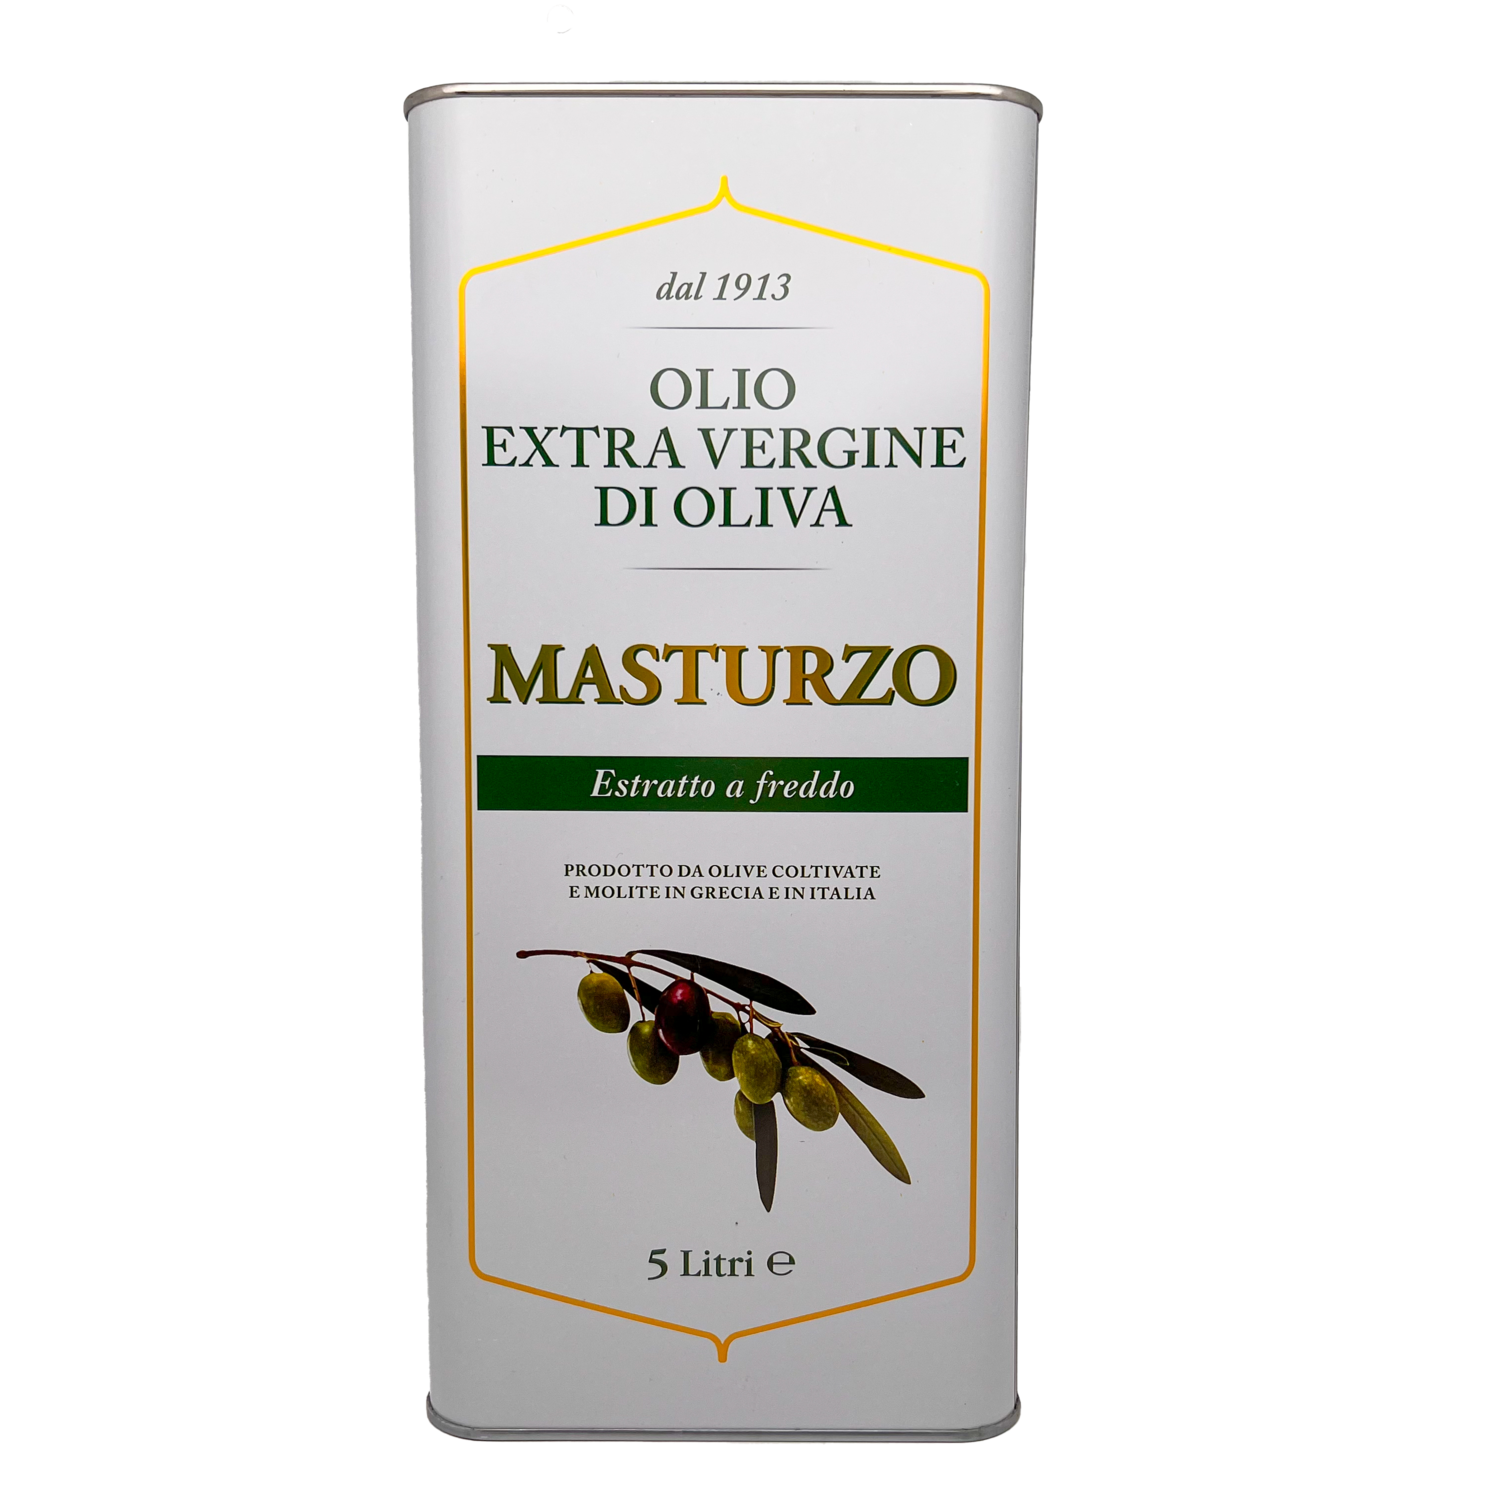 Olio extra vergine di olivia "MASTURZO" 5L